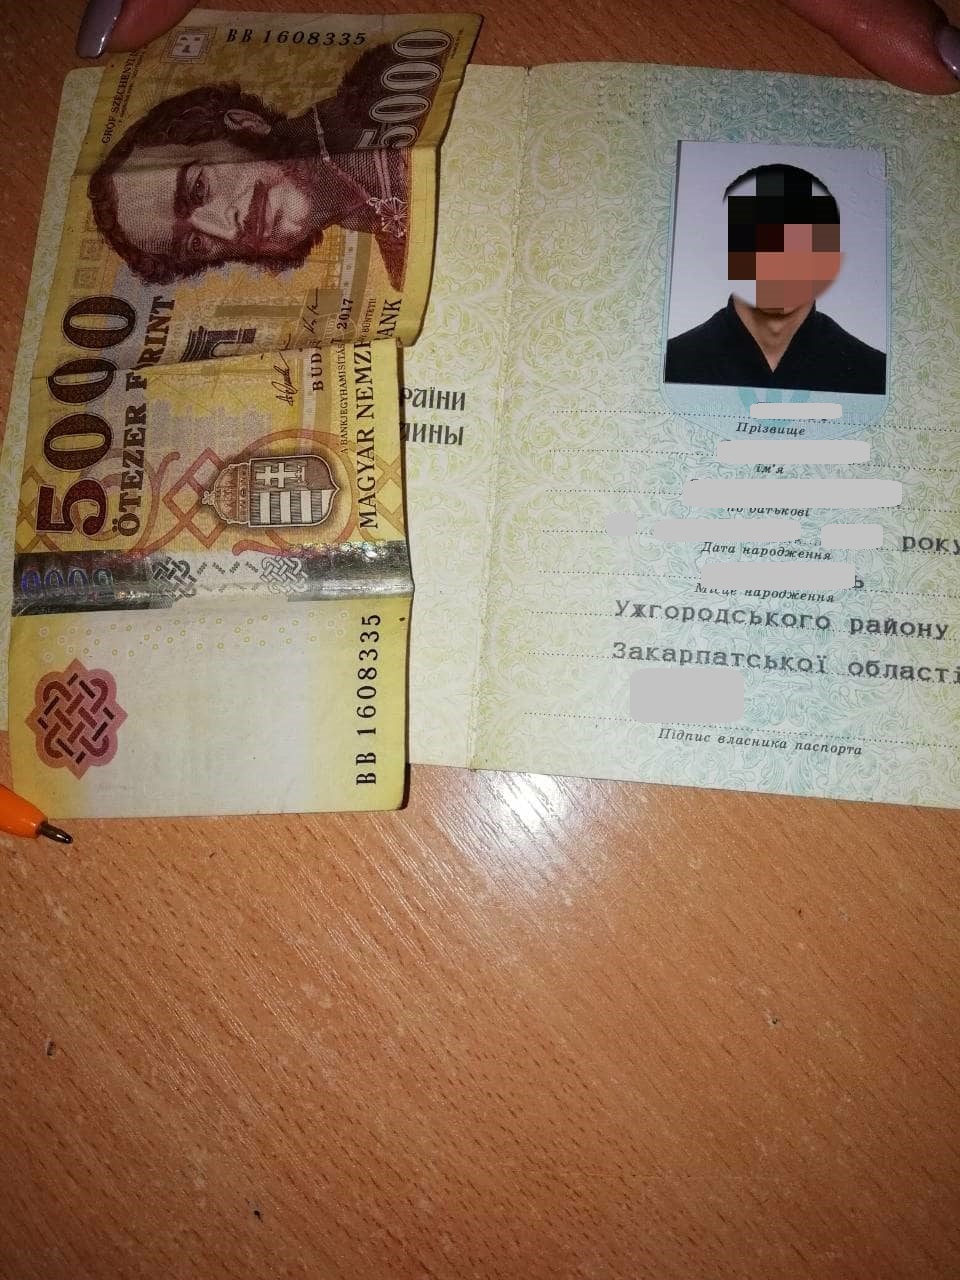 Виїхавши за угорським паспортом, закарпатець намагався повернутися вже за українським і за 500 форинтів хабара